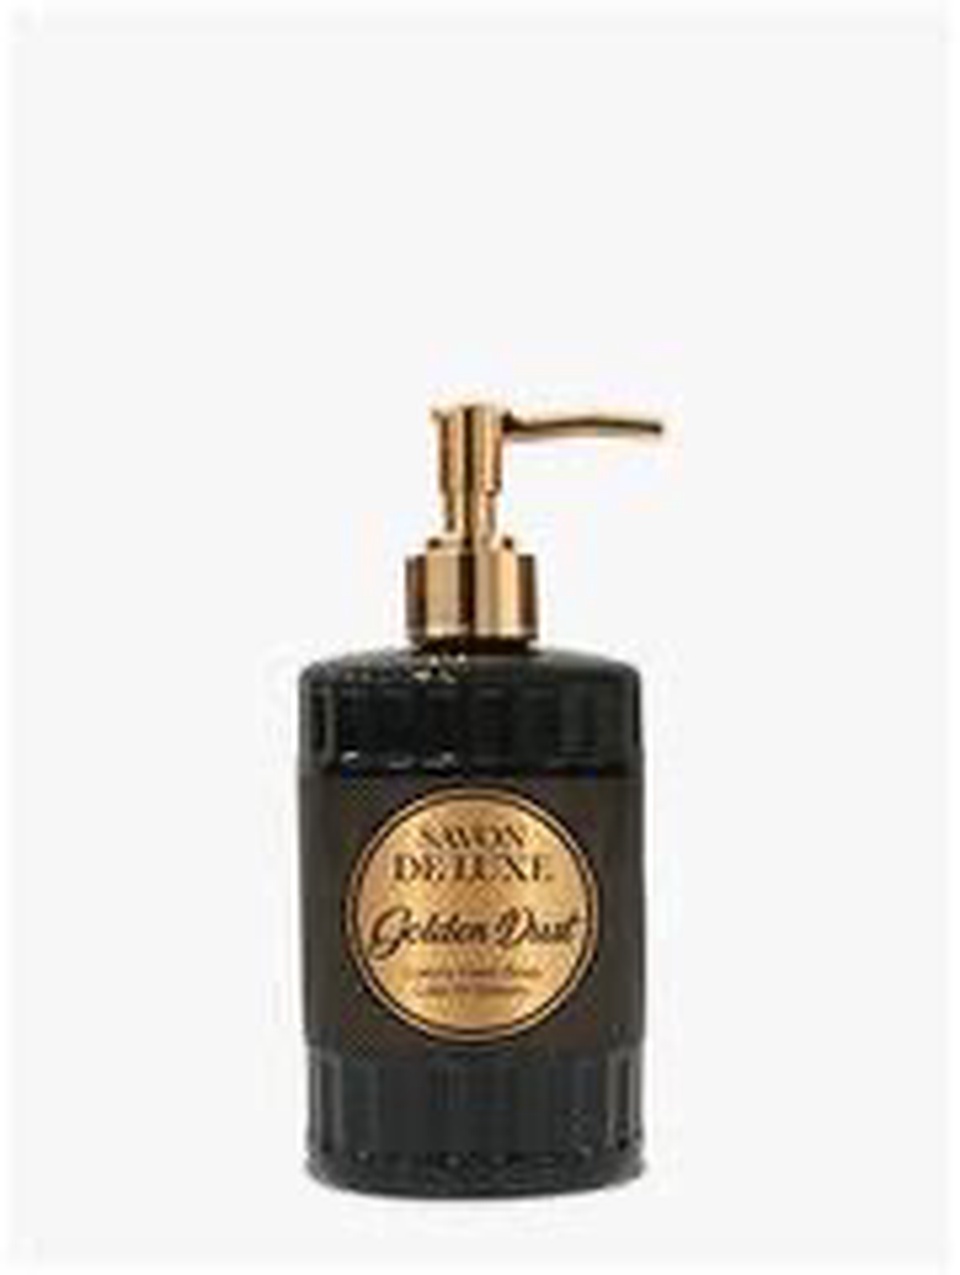 Savon De Luxe Жидкое мыло «Золотая пыль» - 300 ₽, заказать онлайн.